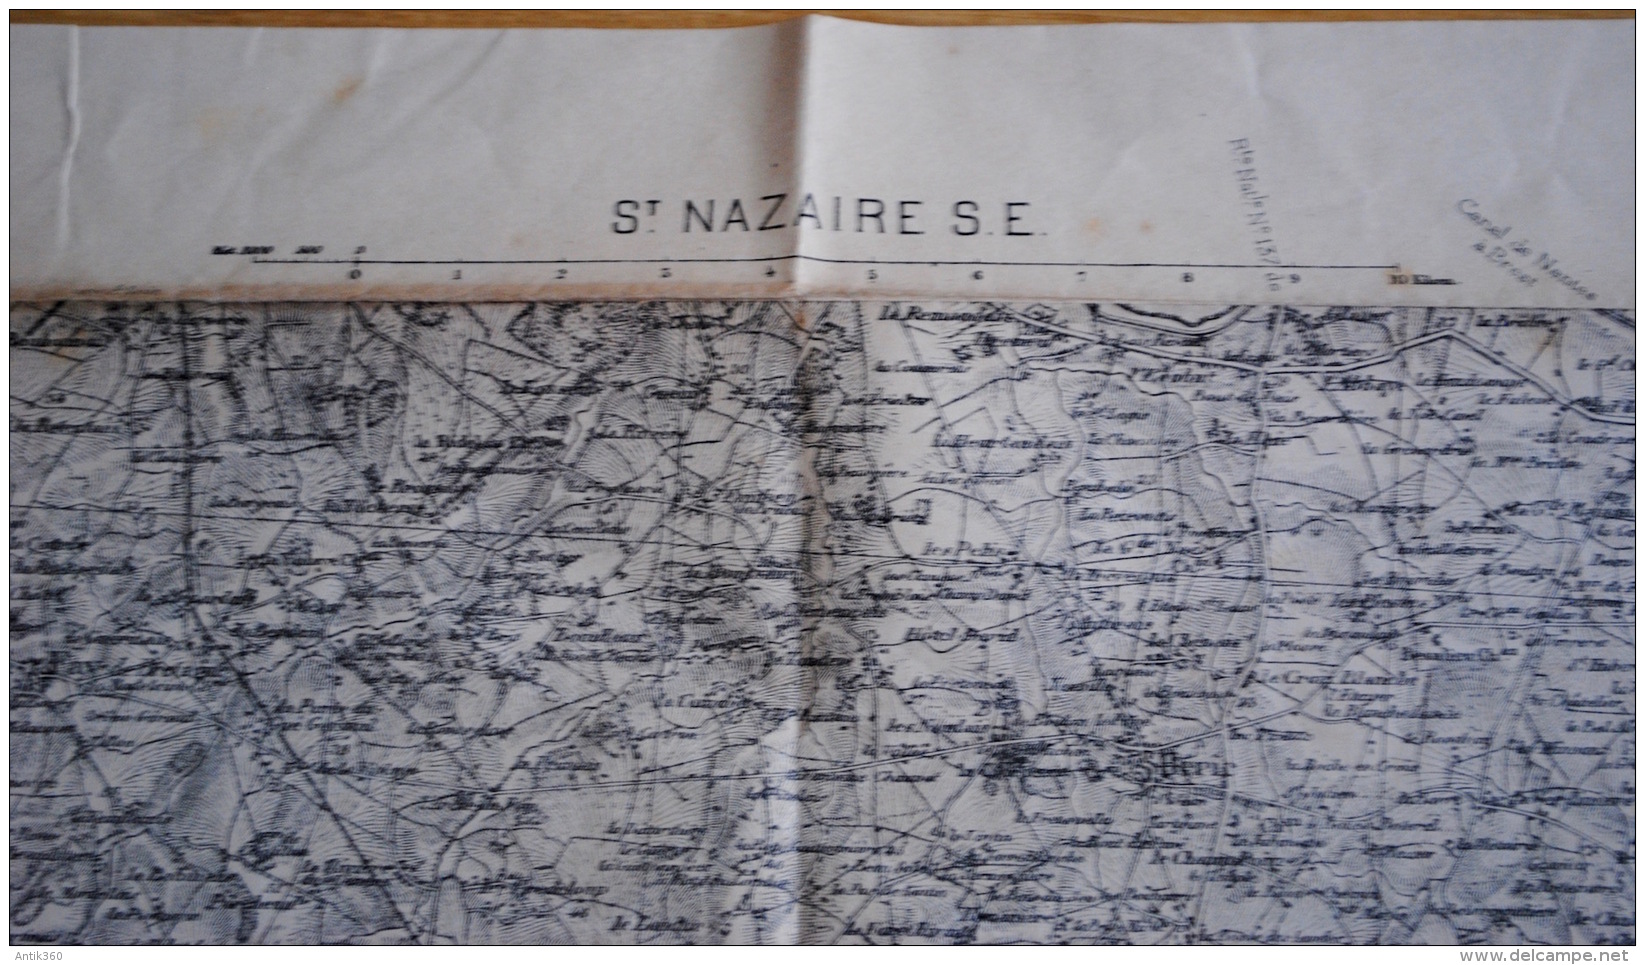 Lot de 5 anciennes cartes géographiques d'Etat Major des Armées région de Nantes Saint Nazaire Ancenis Loire Atlantique